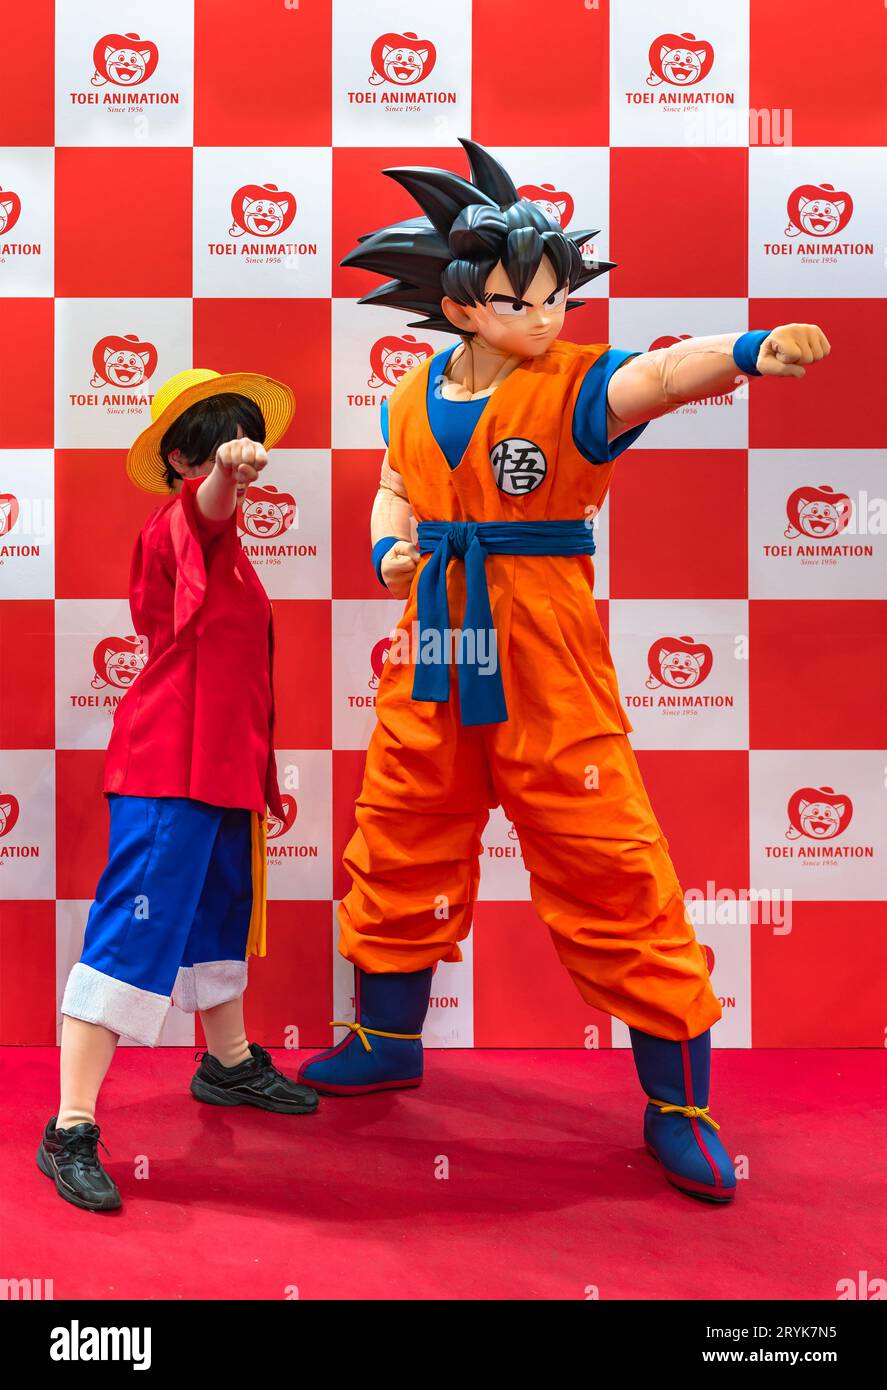 chiba, japon - décembre 18 2022 : une jeune fille cosplayeuse portant le costume de personnage luffy d'une seule pièce balançant son poing vers l'avant avec son Goku Banque D'Images